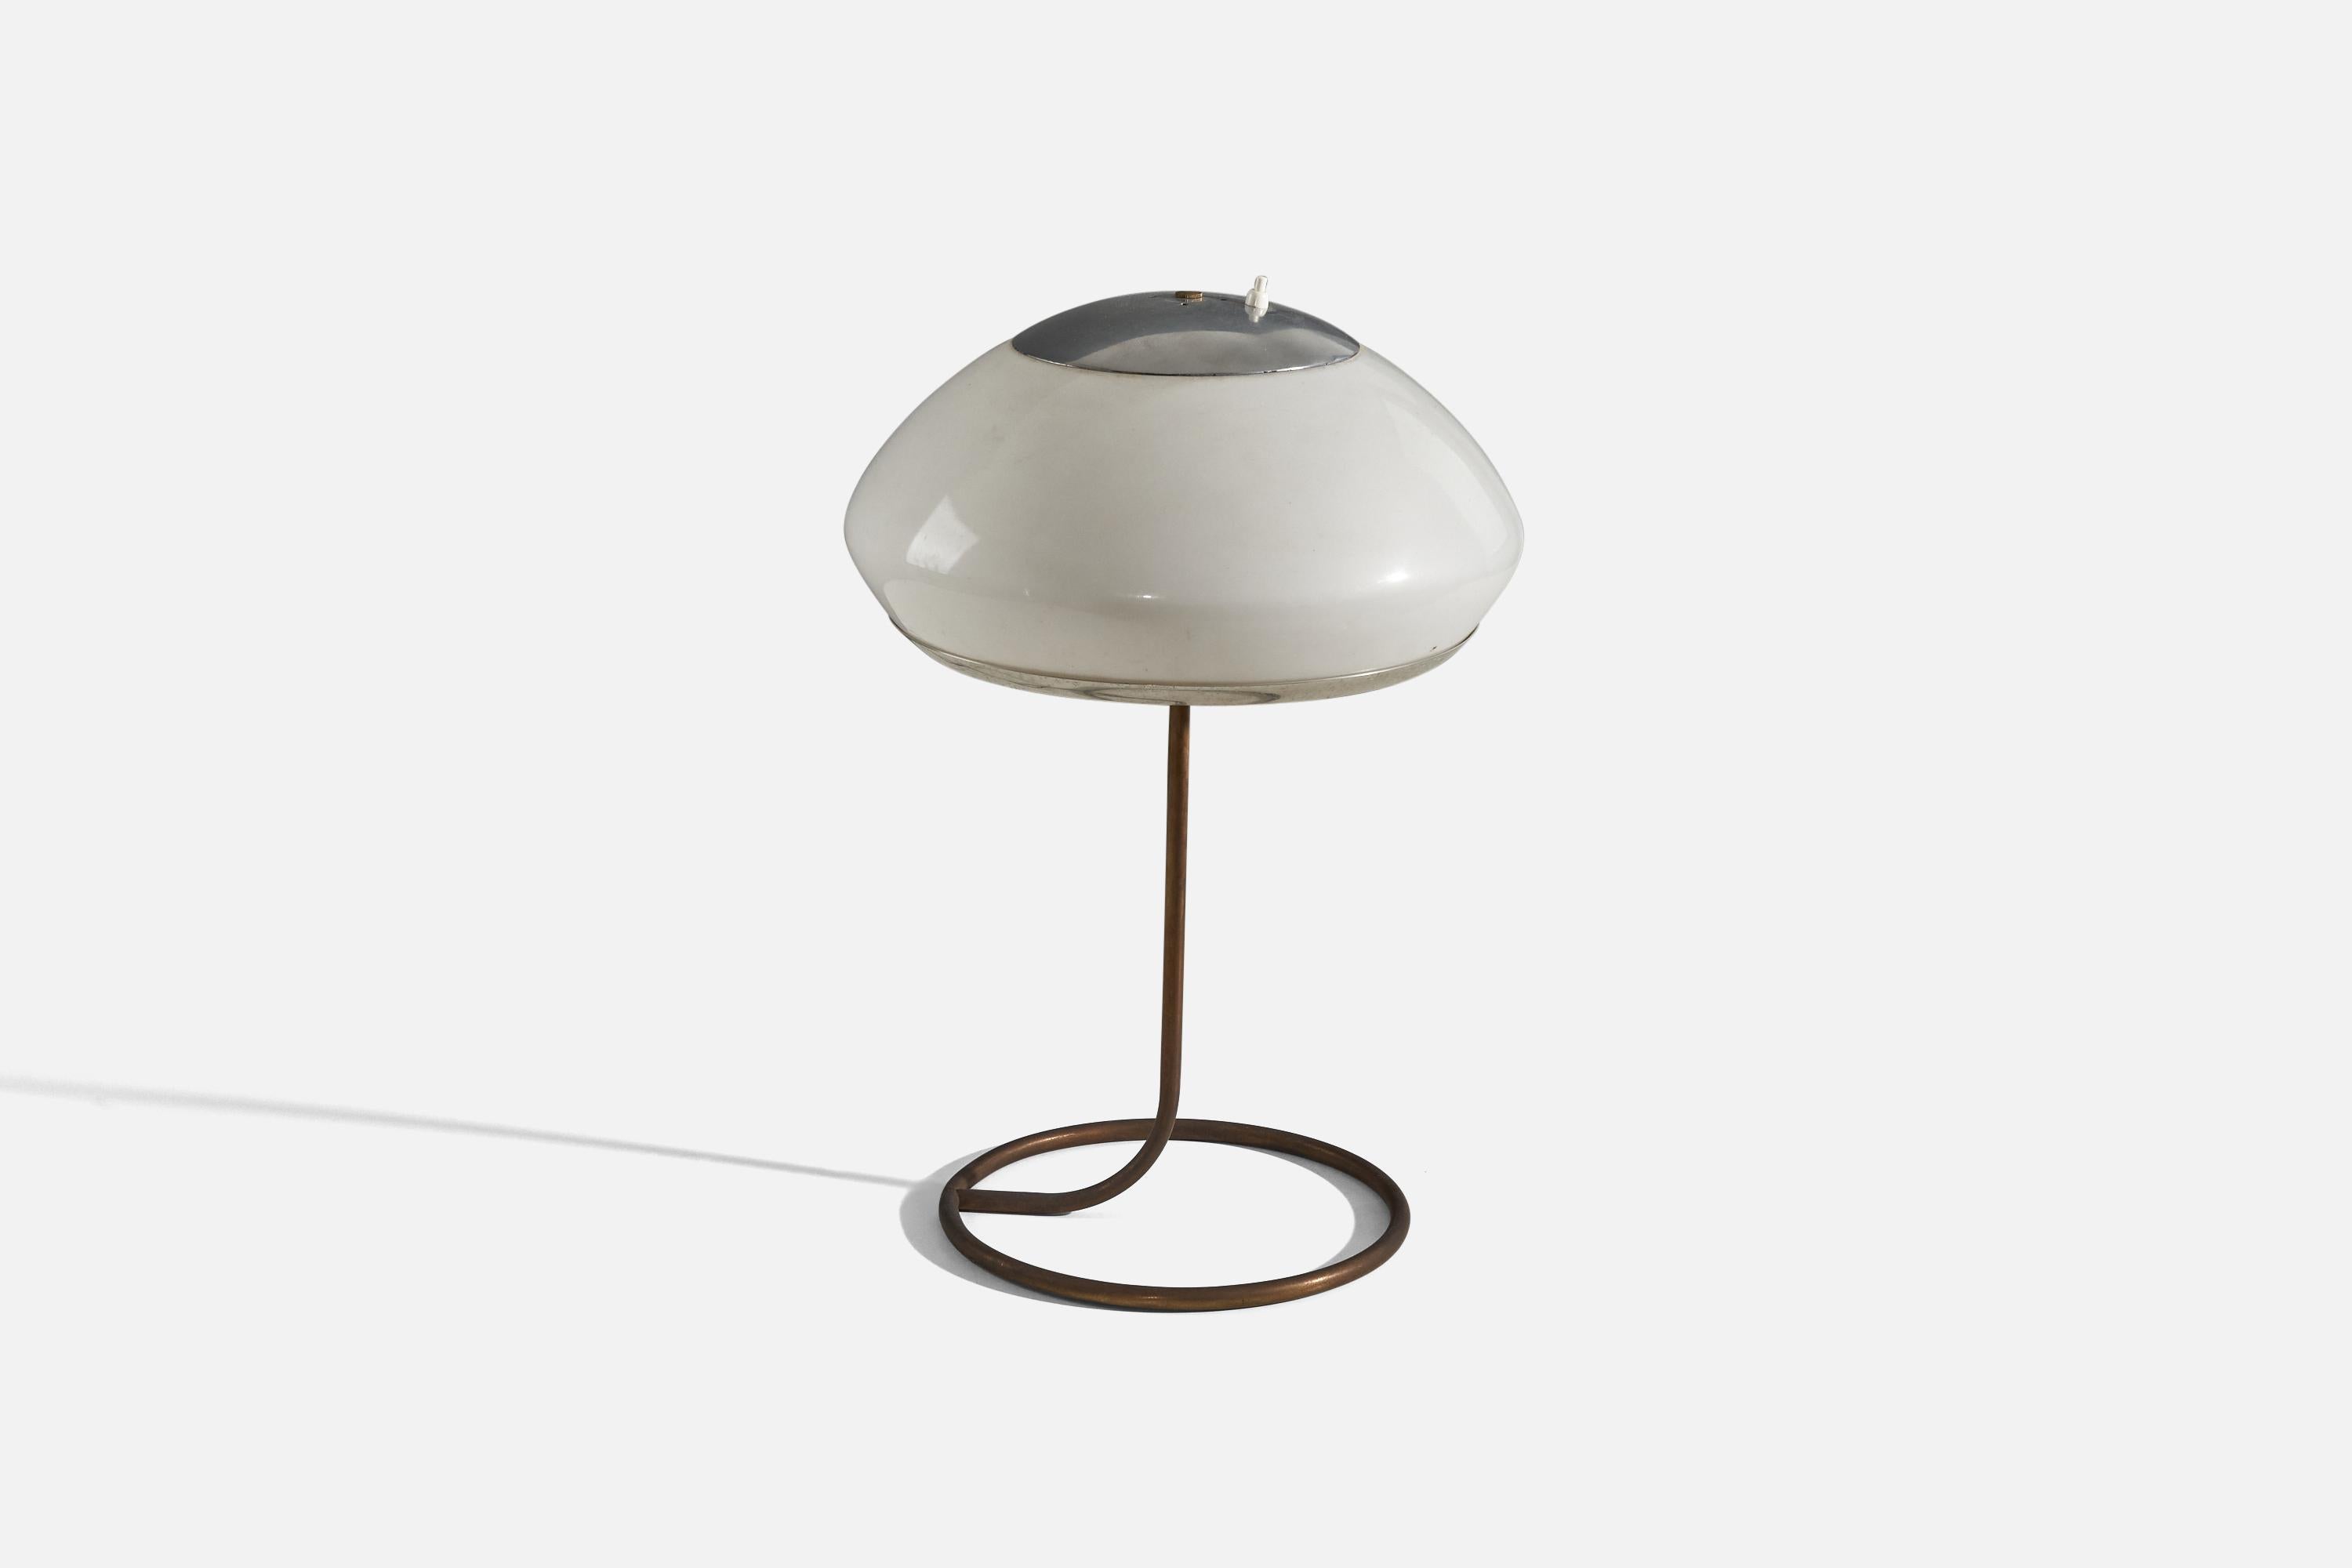 Lampe de table en métal et acrylique conçue et produite en Italie, années 1960.

